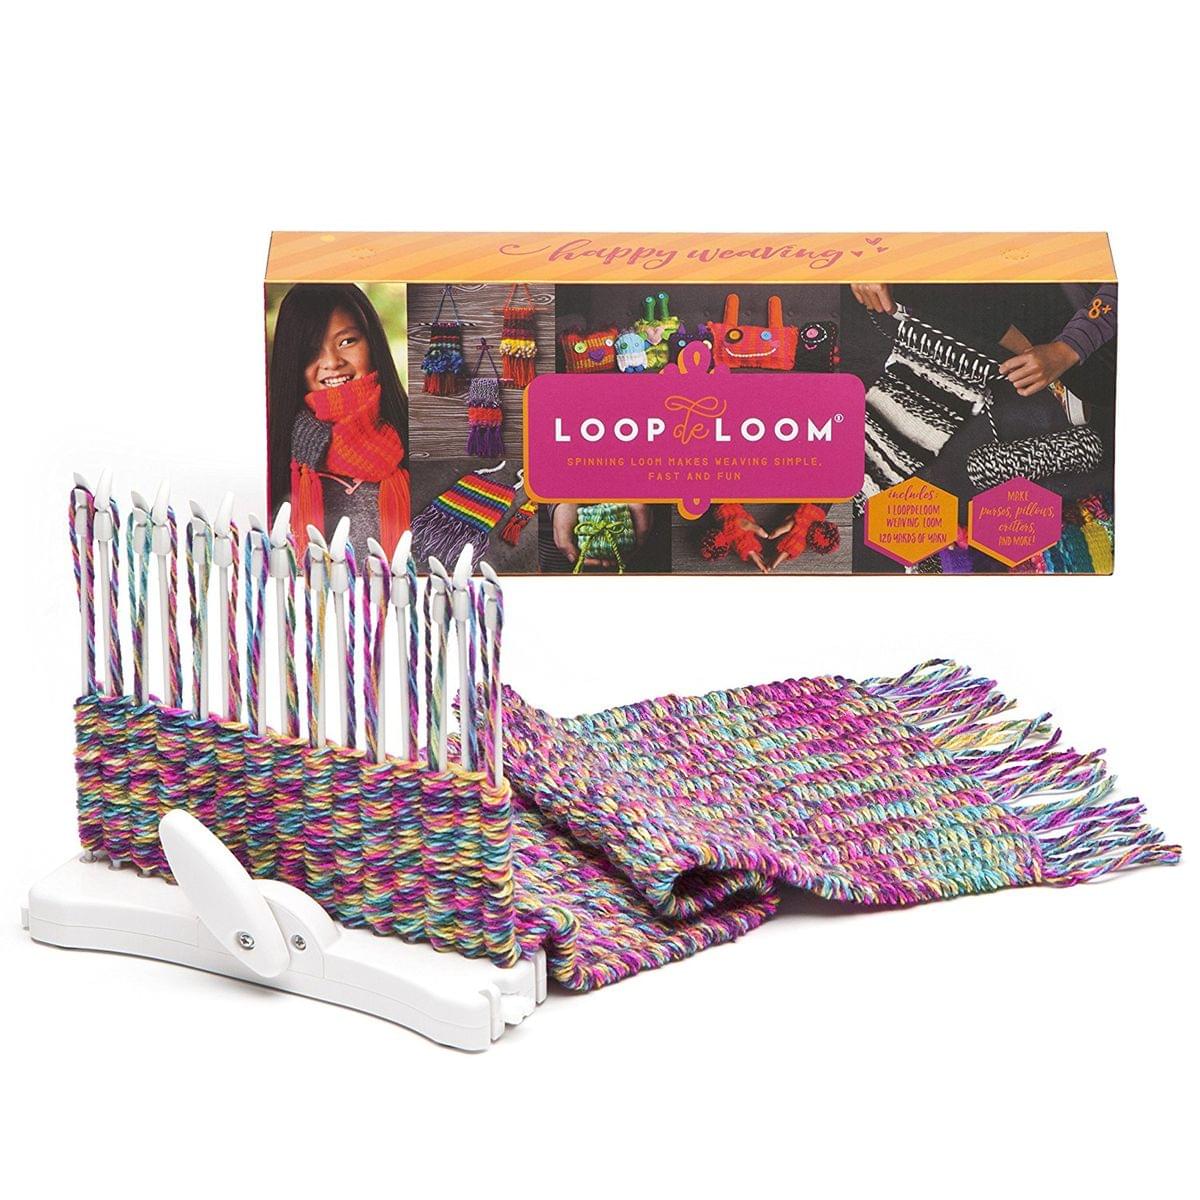 Loopdeloom Weaving Loom Kit